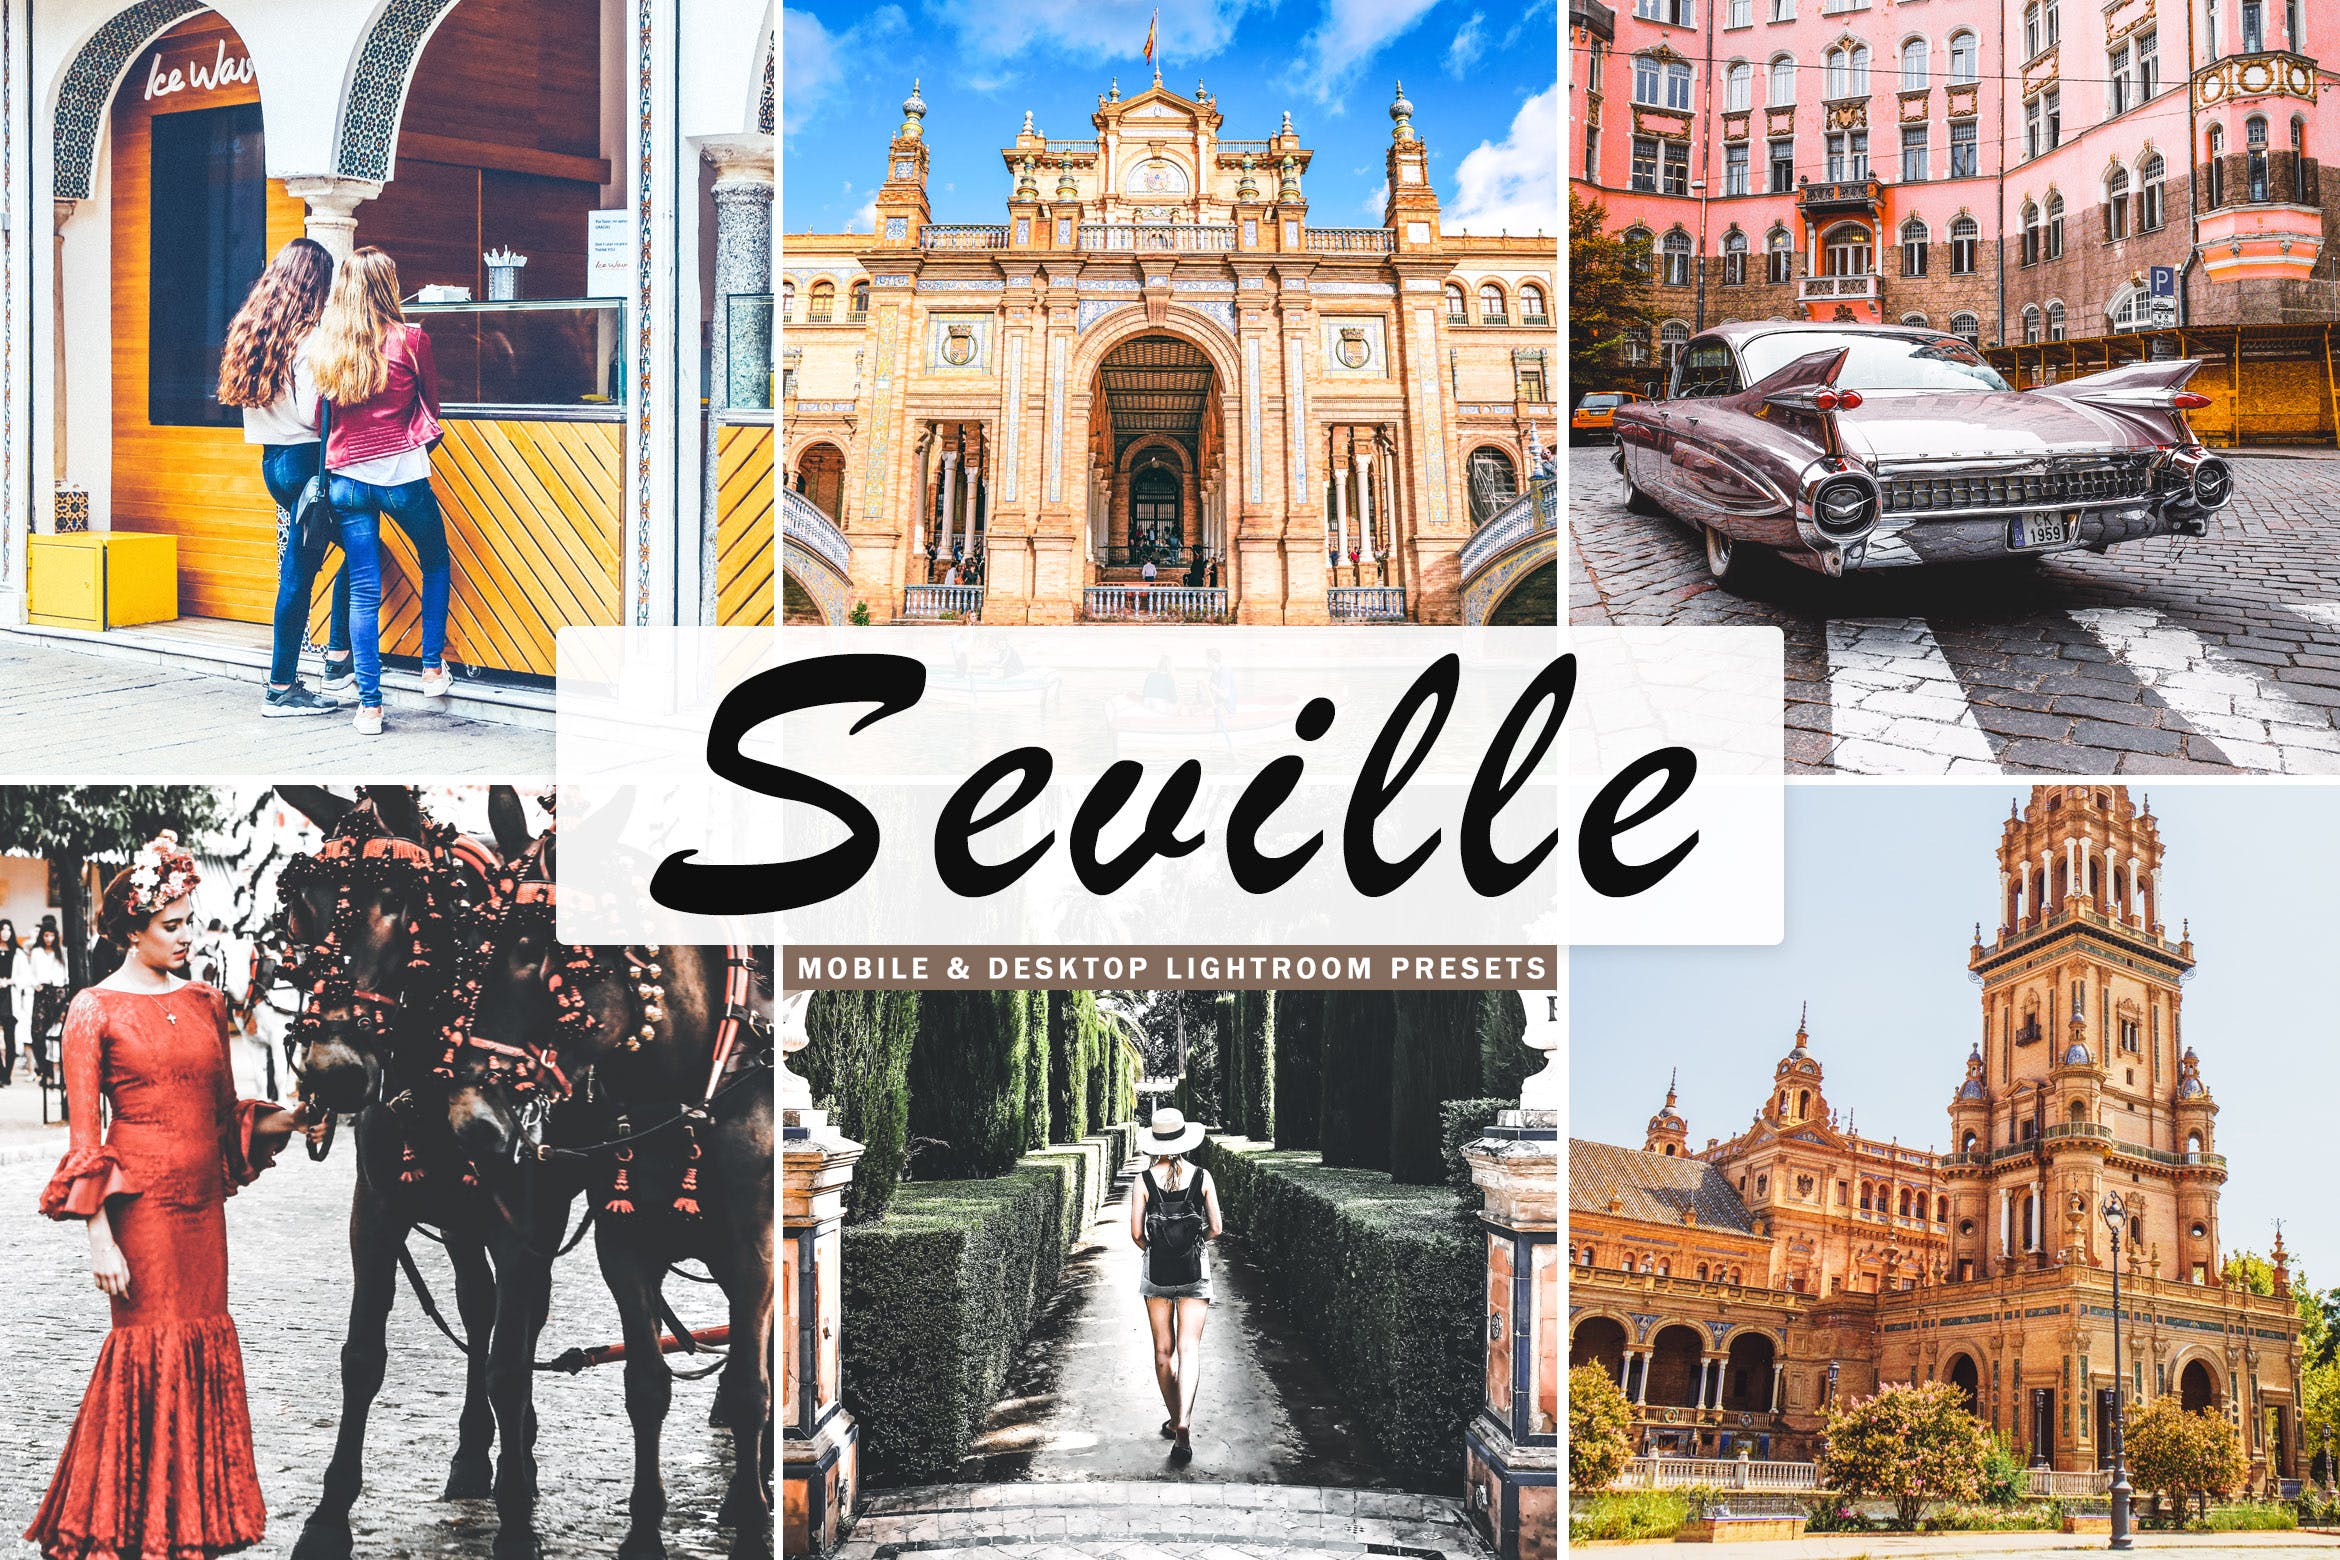 塞维利亚旅行摄影后期加工素材库精选LR预设 Seville Mobile & Desktop Lightroom Presets插图